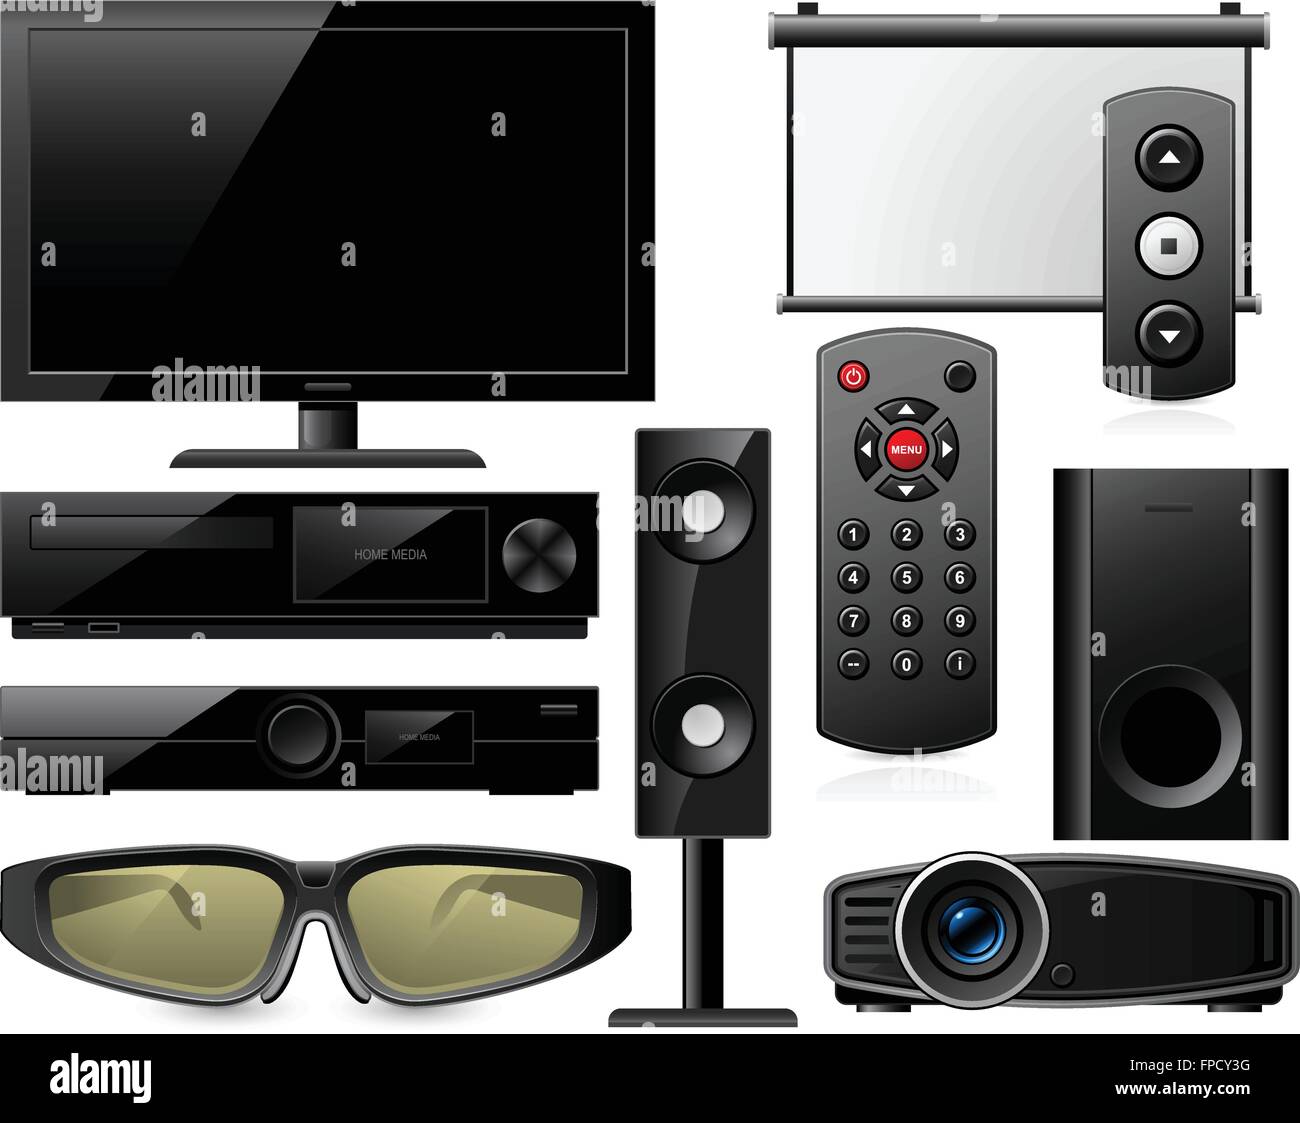 Impianti home theater con occhiali 3d e proiettore Immagine e Vettoriale -  Alamy